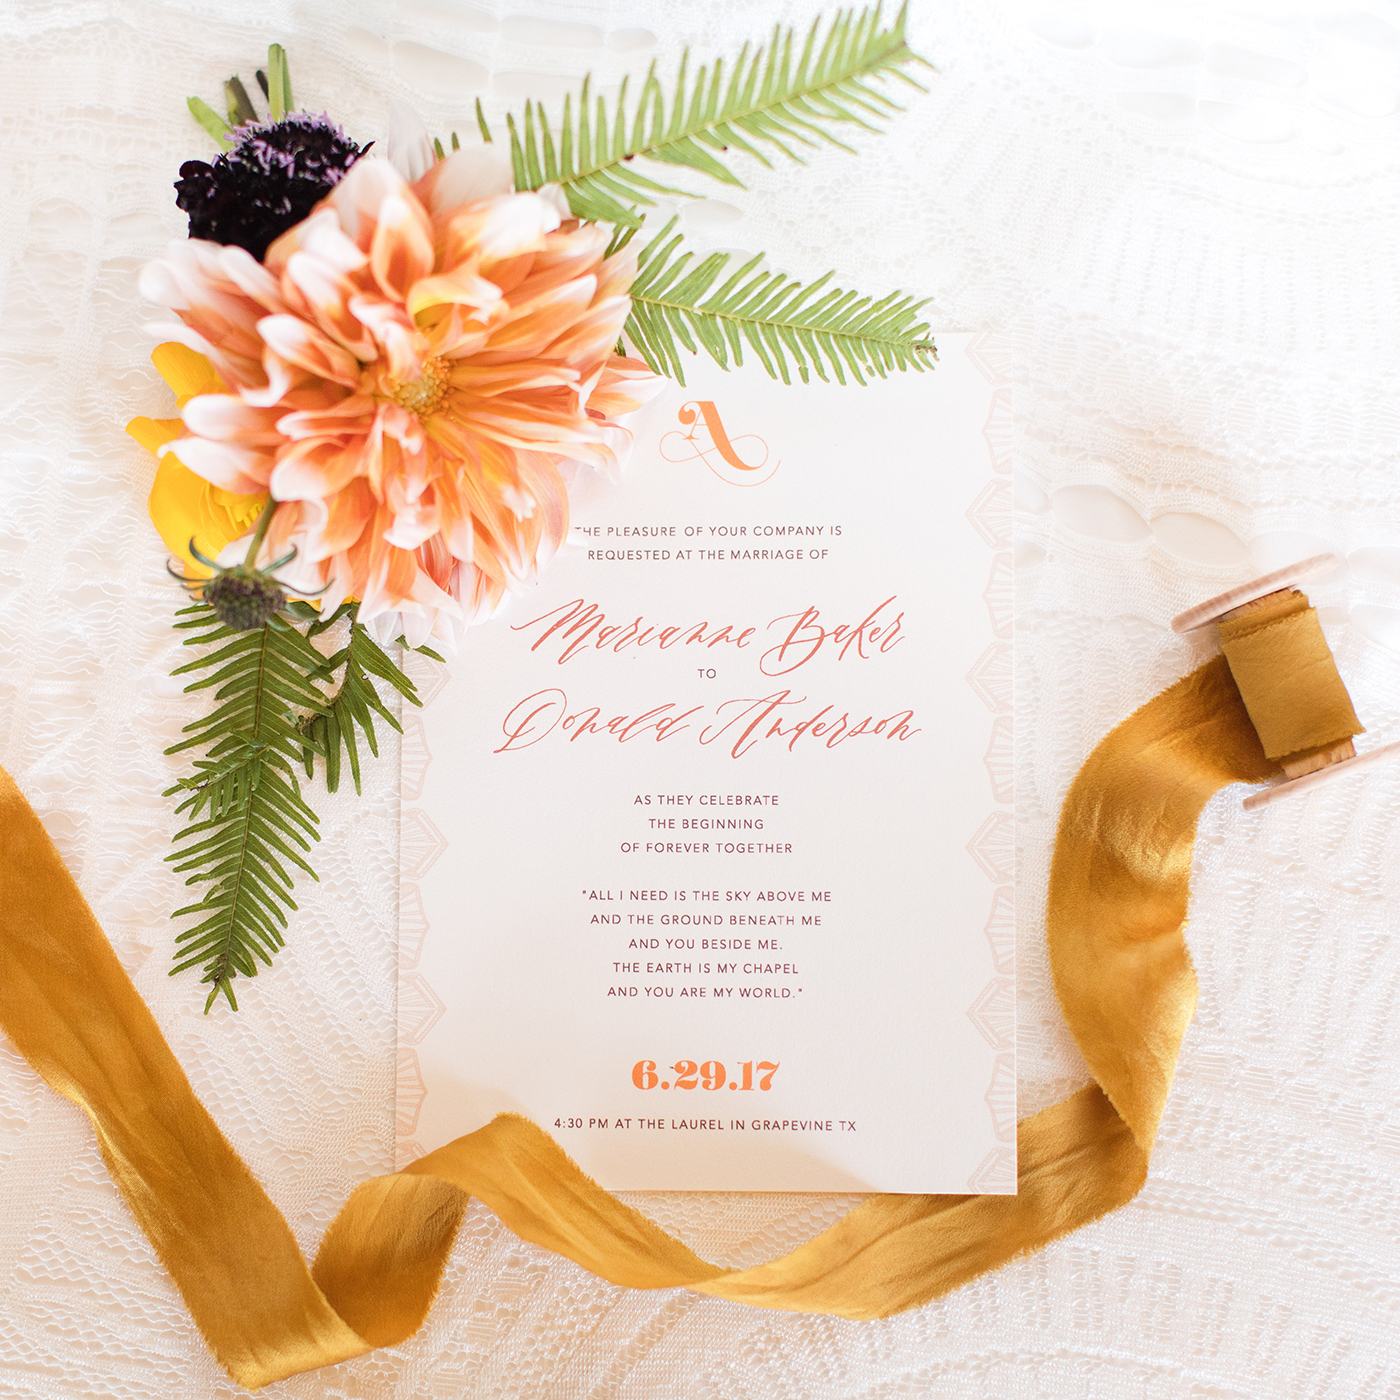 Custom Wedding Invitations DFW: Brides of North Texas 70s Inspired Suite // Sarah Ann Design